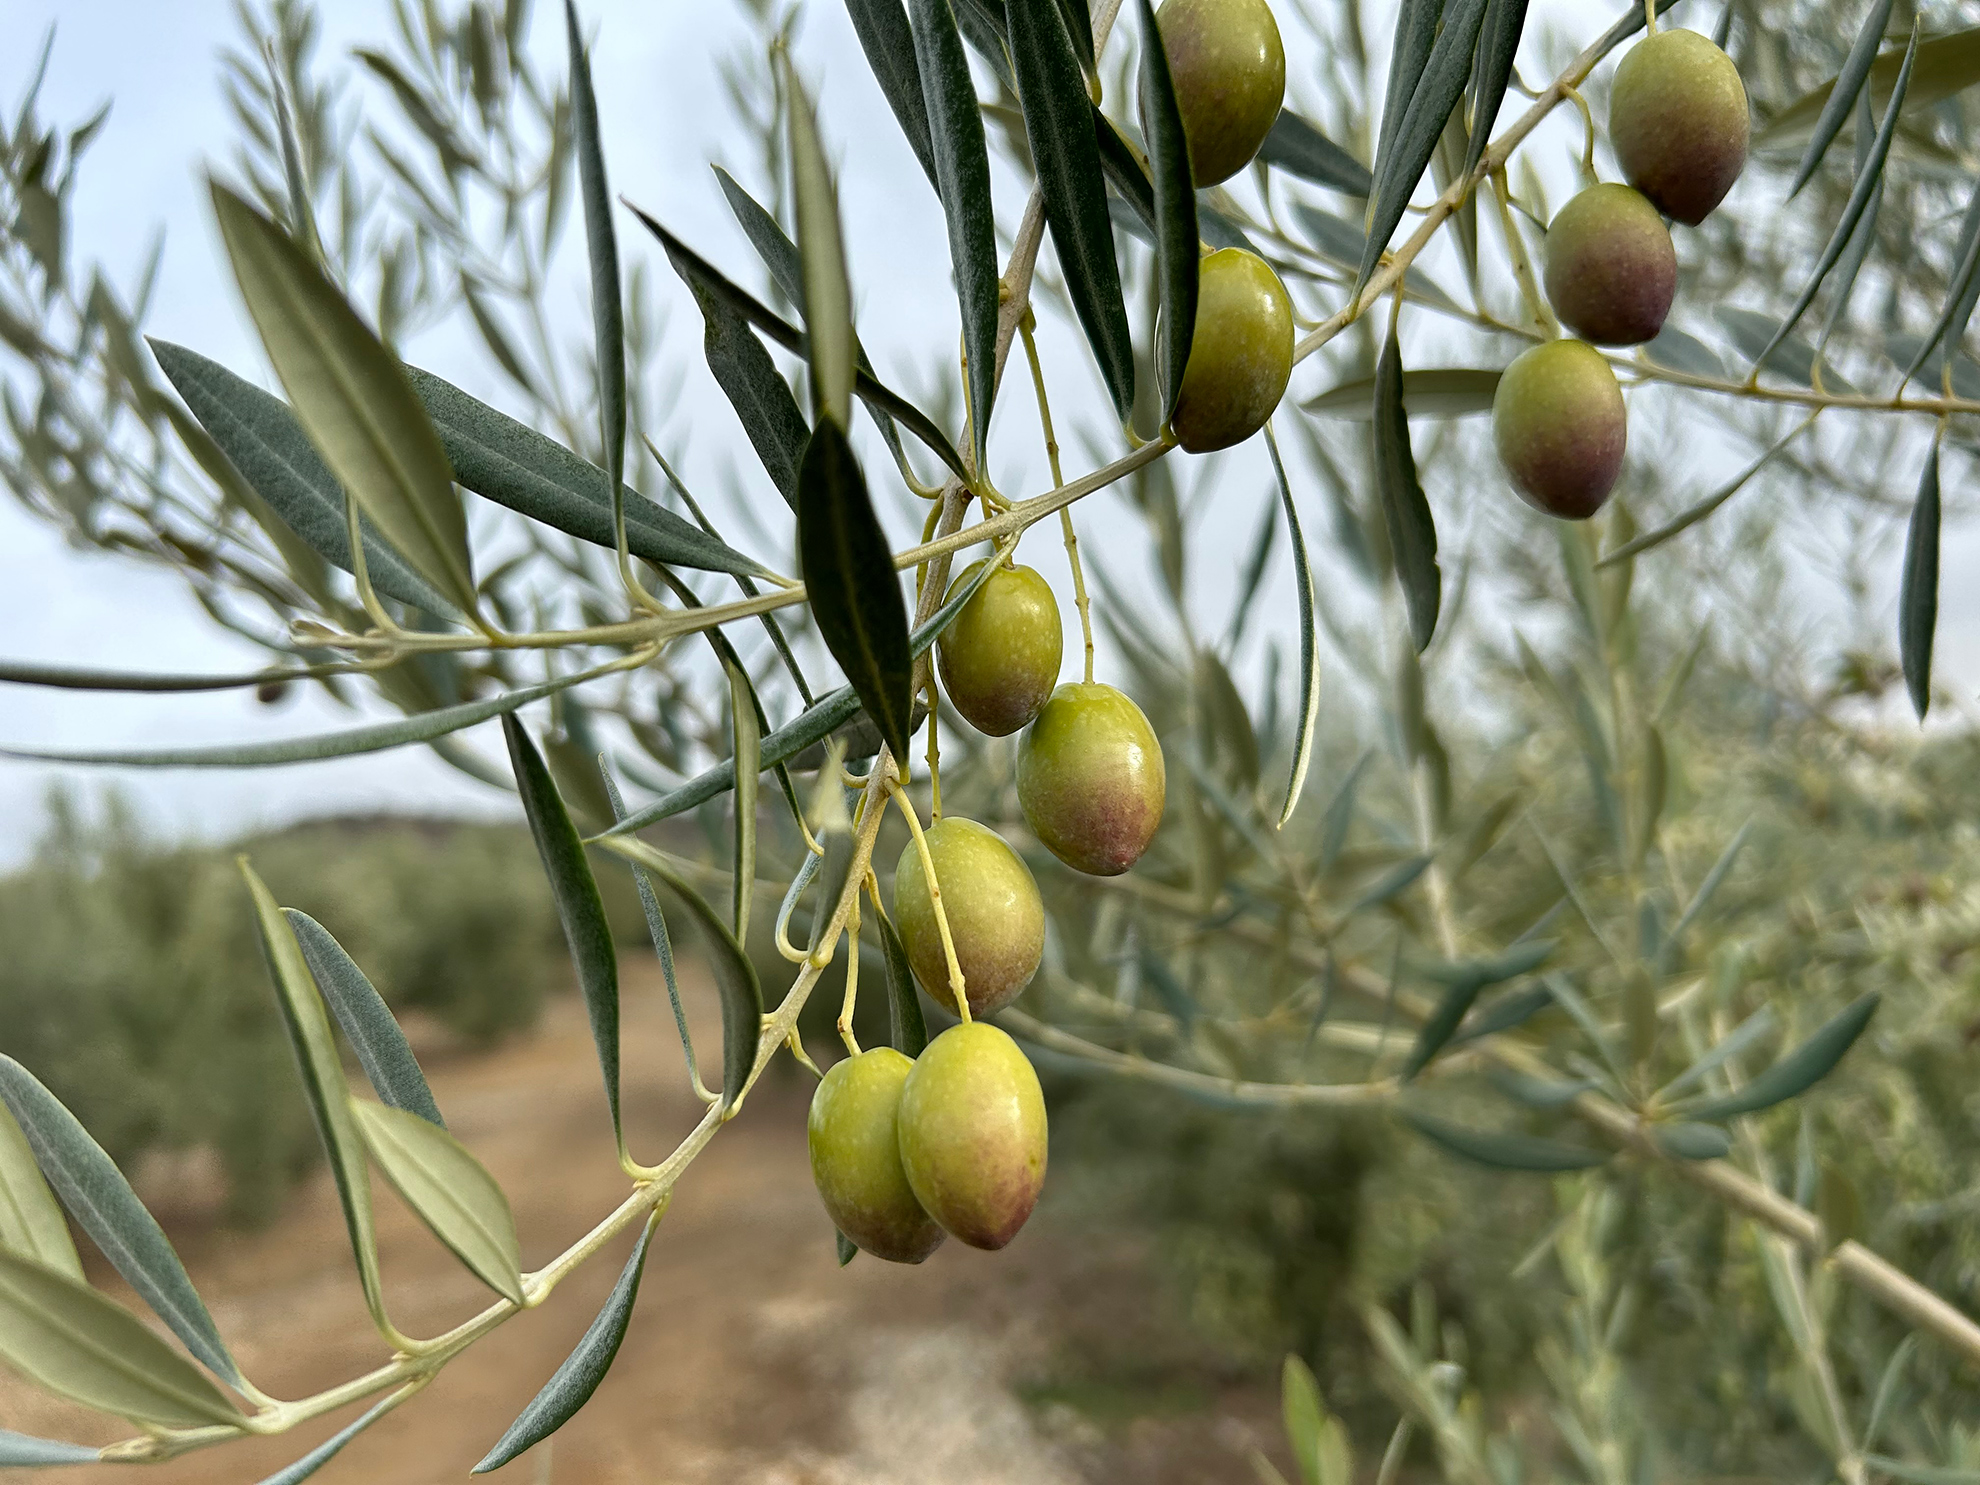 85 Preguntas y respuestas sobre la norma de calidad del aceite de oliva